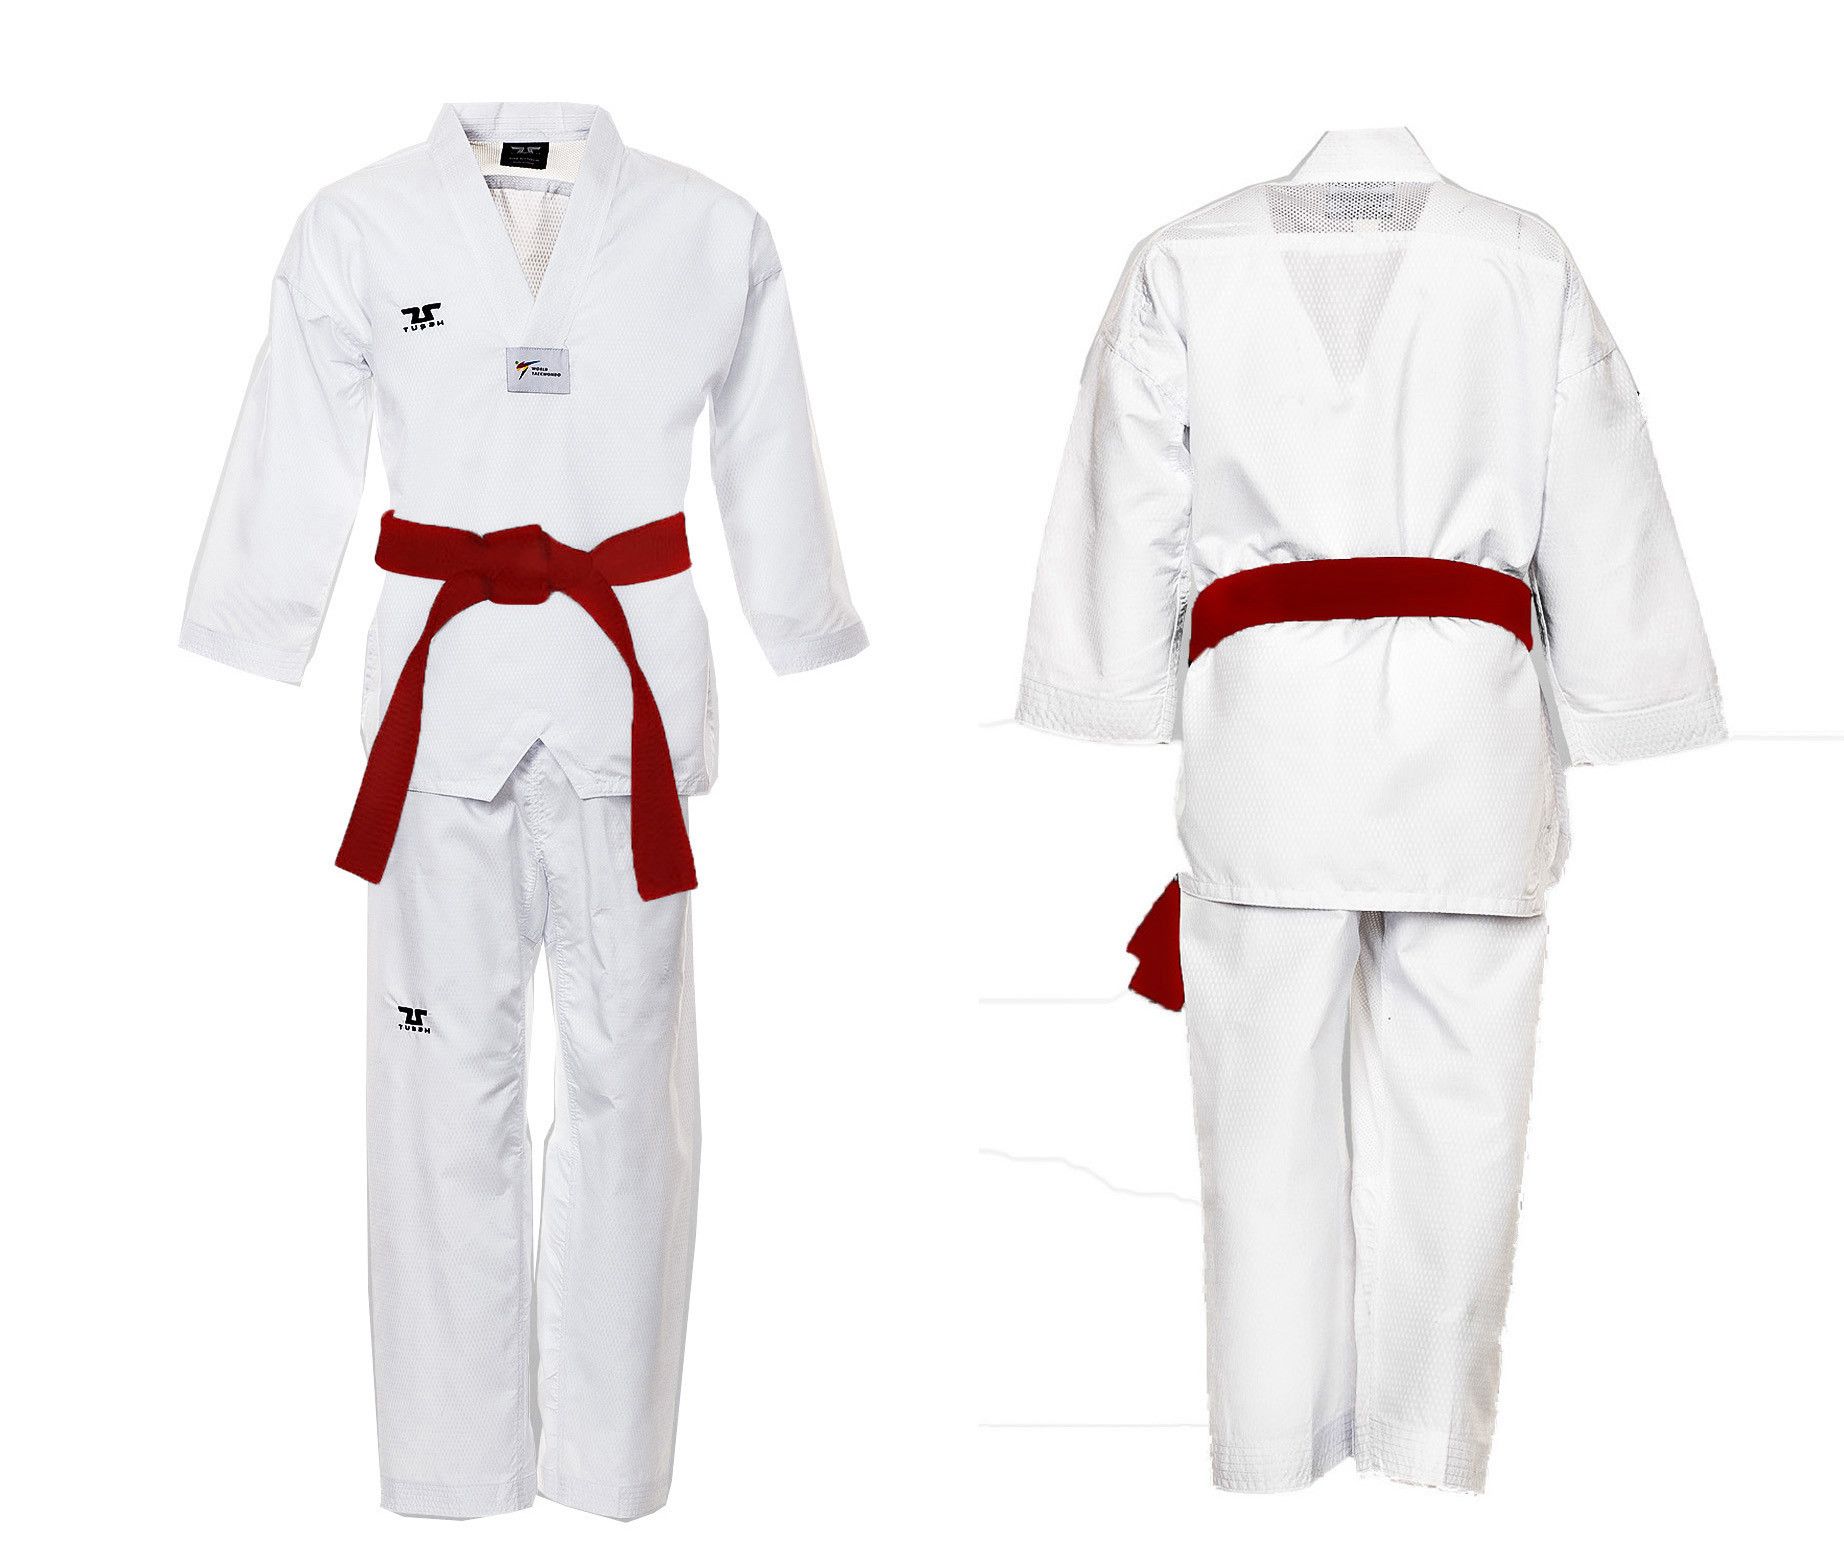 Dobok Ultraleggero per Taekwondo Tusah Easyfit Fighter collo Bianco Omologato WT WTF per competizioni ed allenamenti